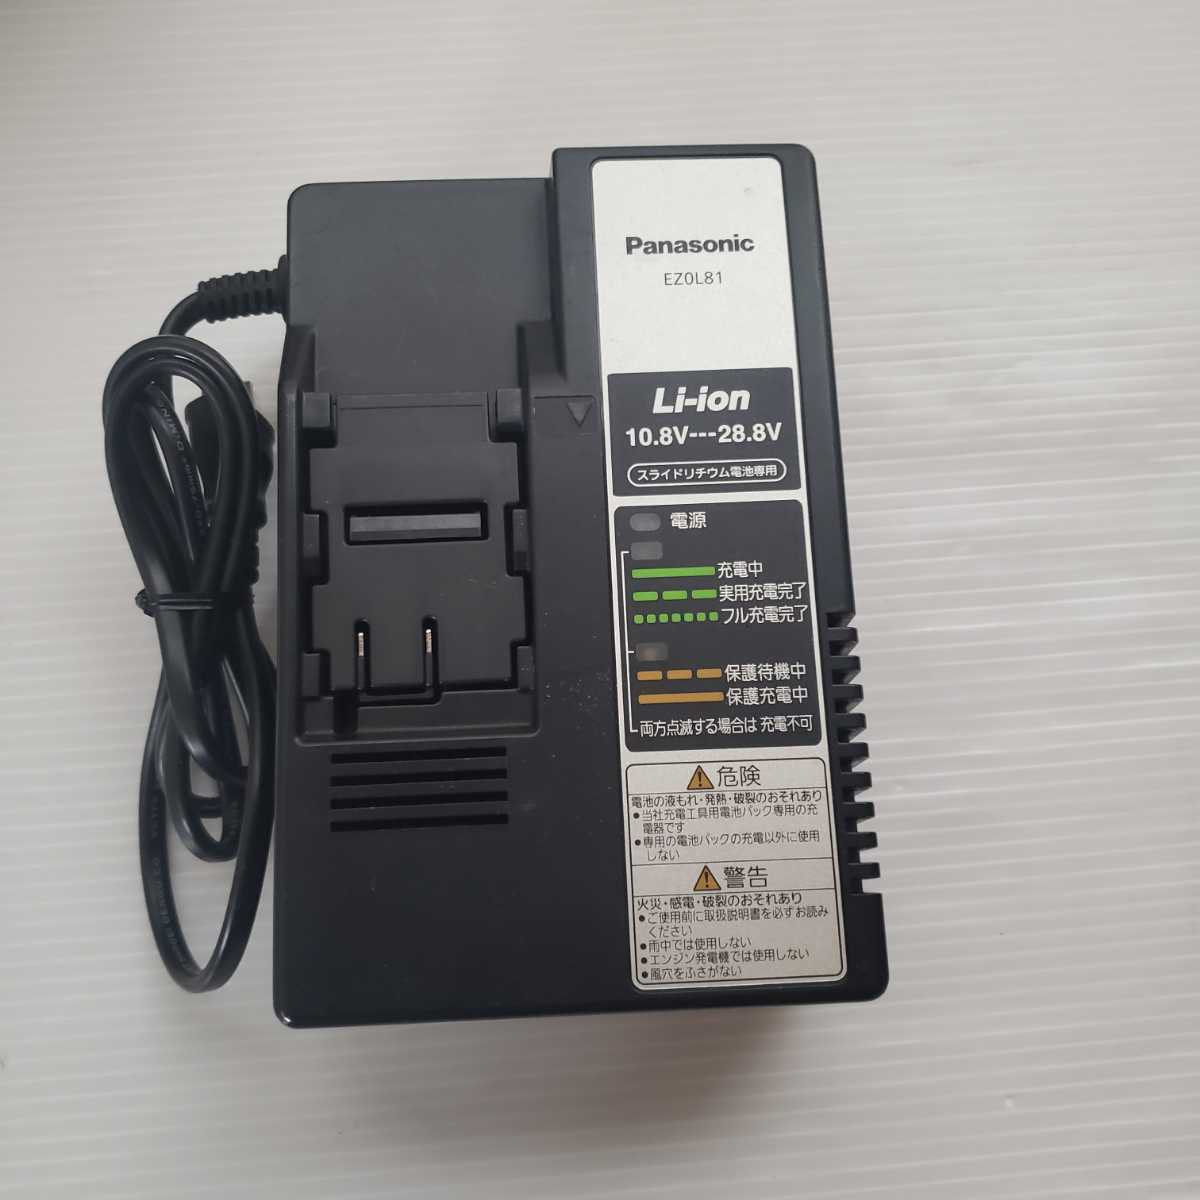 Panasonic EZ0L81 パナソニック 充電器 専用(中古)のヤフオク落札情報